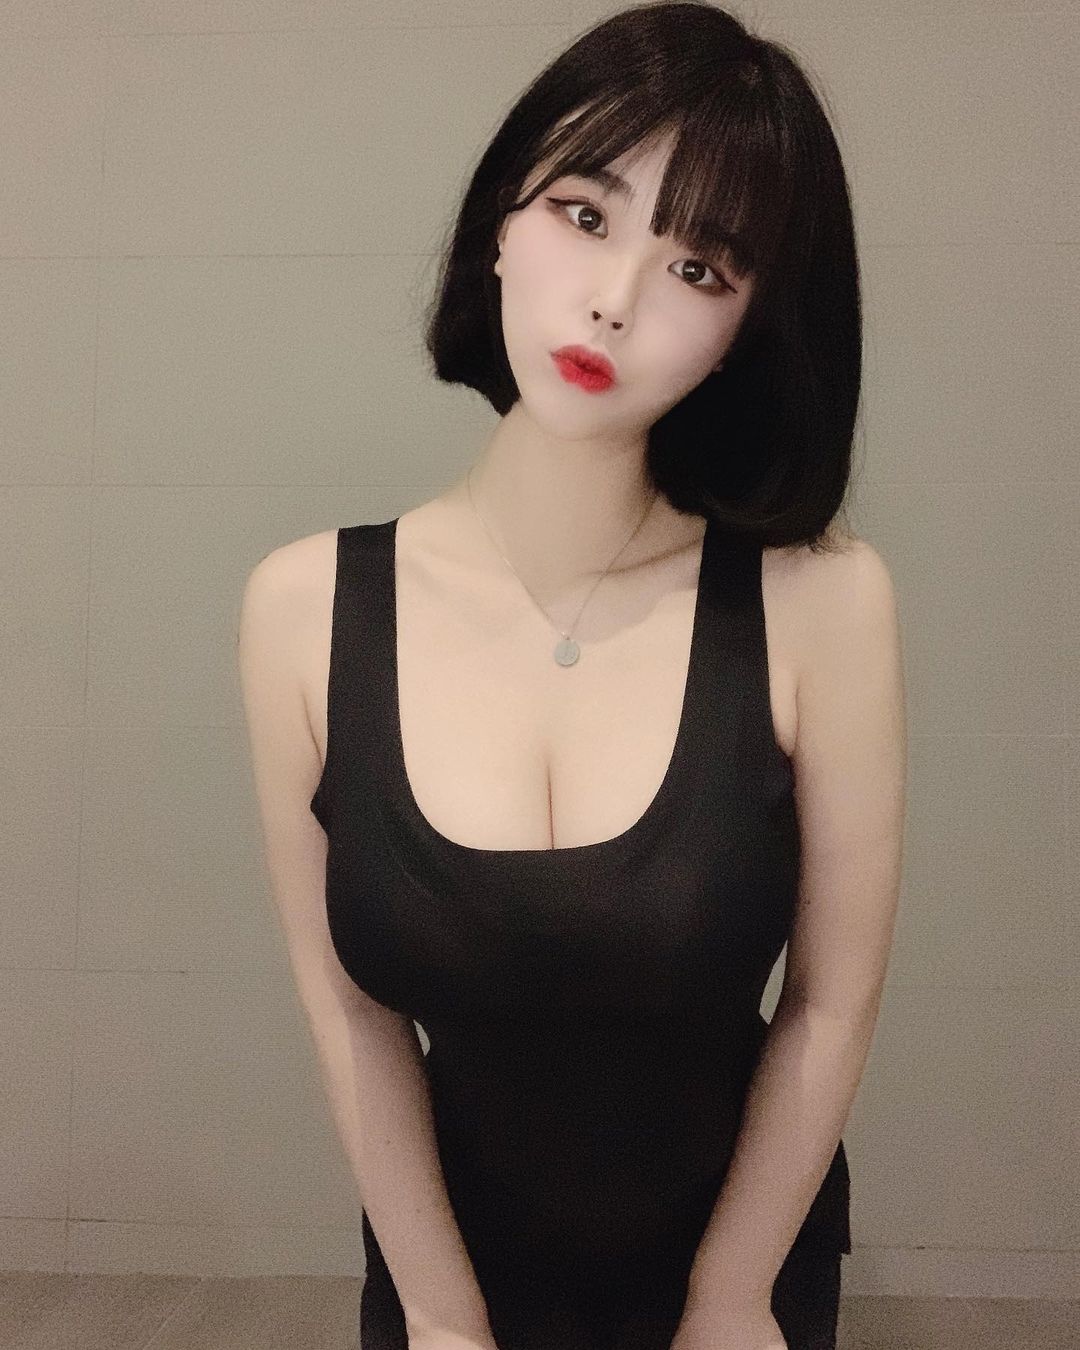 지여 닝 juga dilecehkan oleh netizen karena tubuhnya yang panas. 